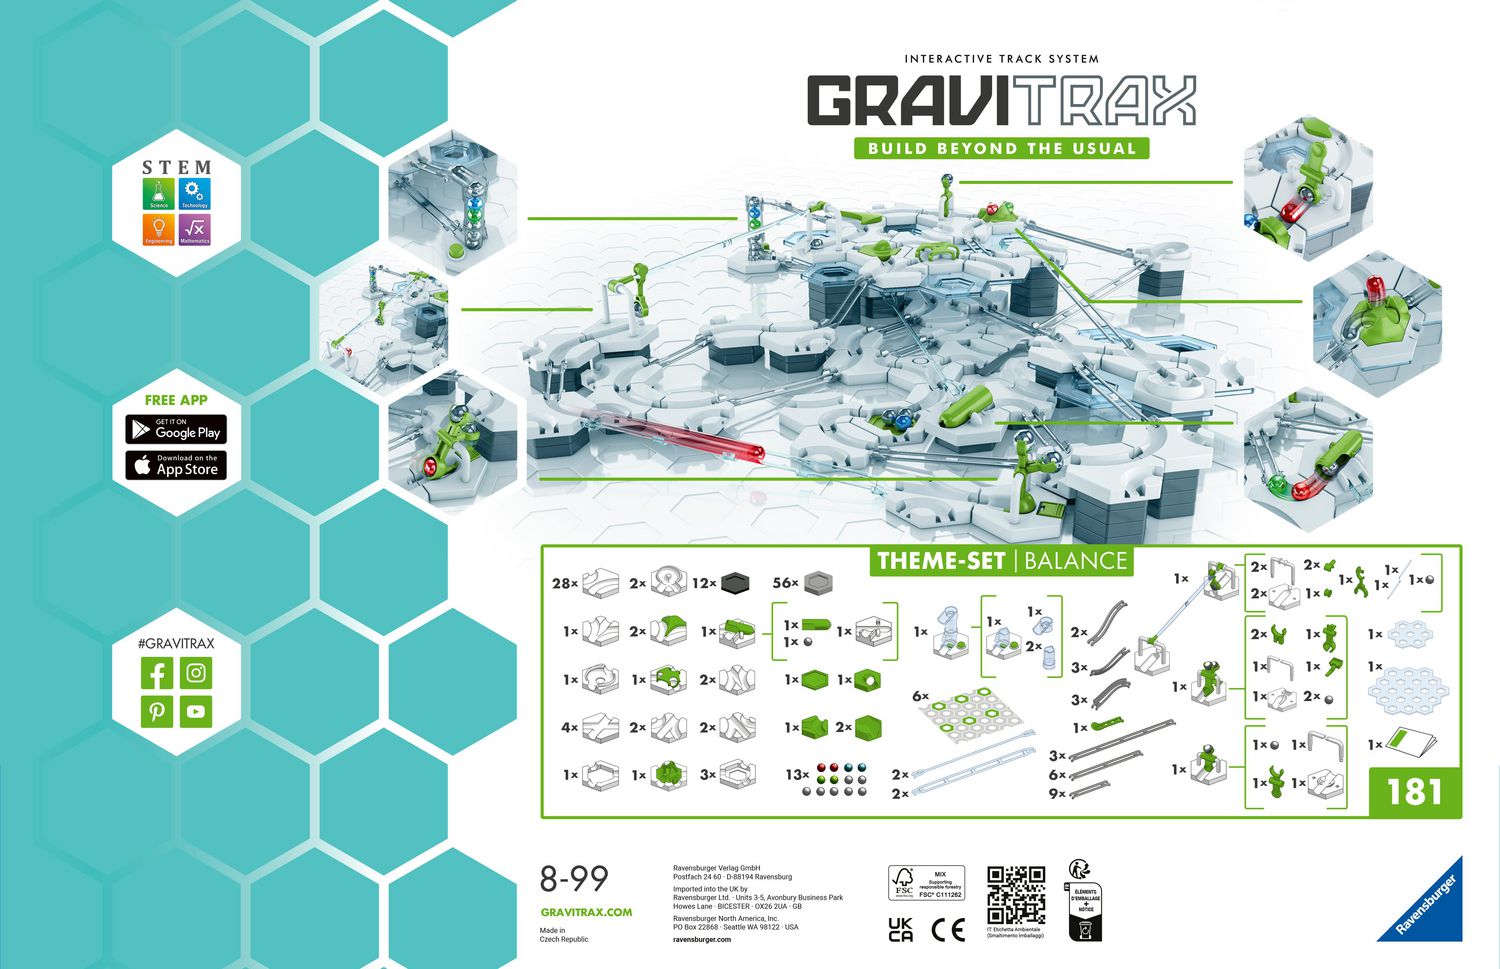 Gravitrax GraviTrax. Le livre pour les fans et les professionnels - Galaxus